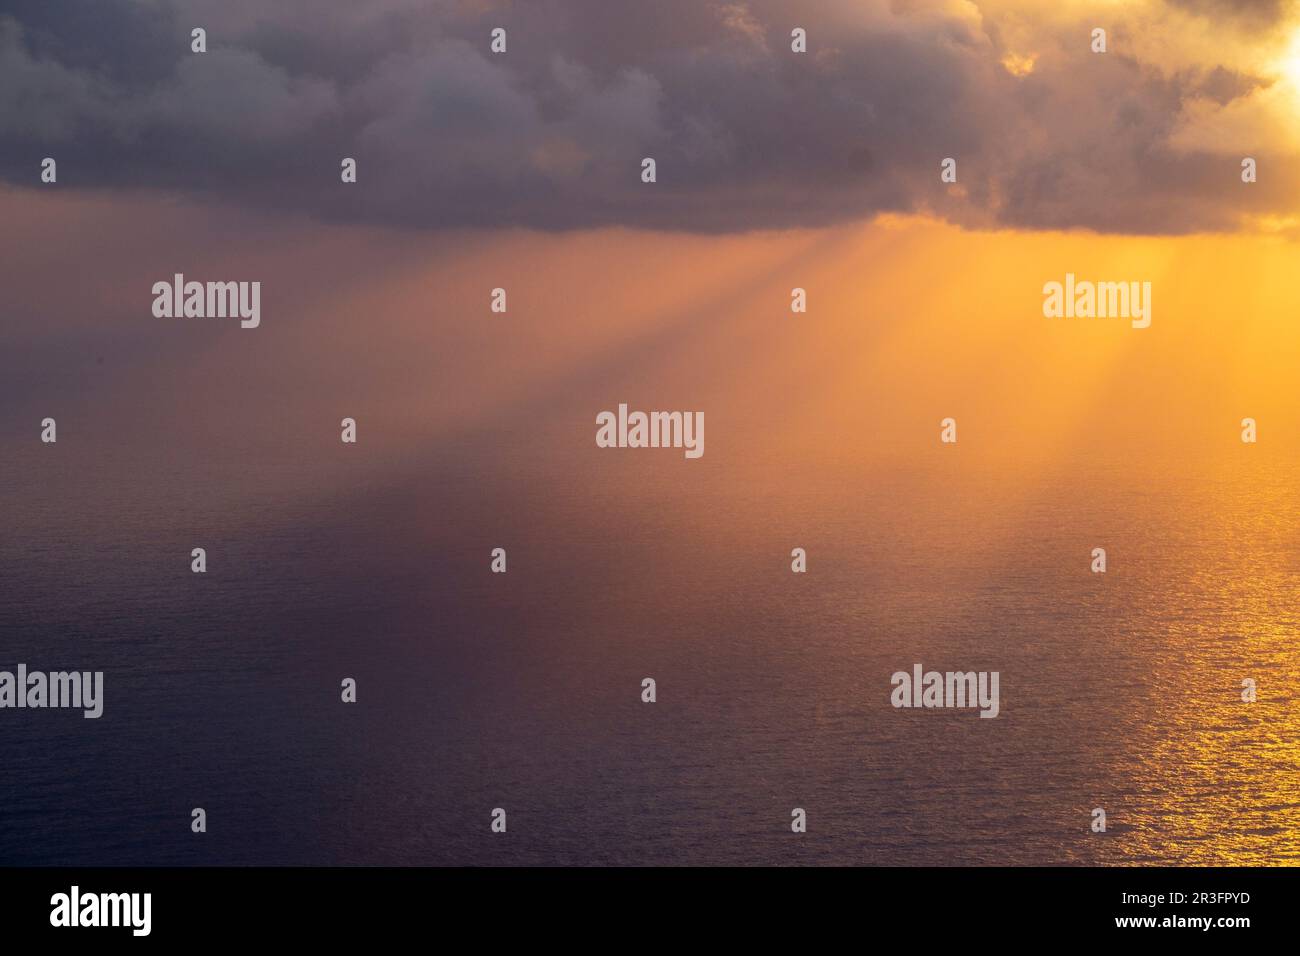 rayos divinos durante la puesta de sol, Sa Costera, Escorca, Mallorca, balearic islands, Spain. Stock Photo